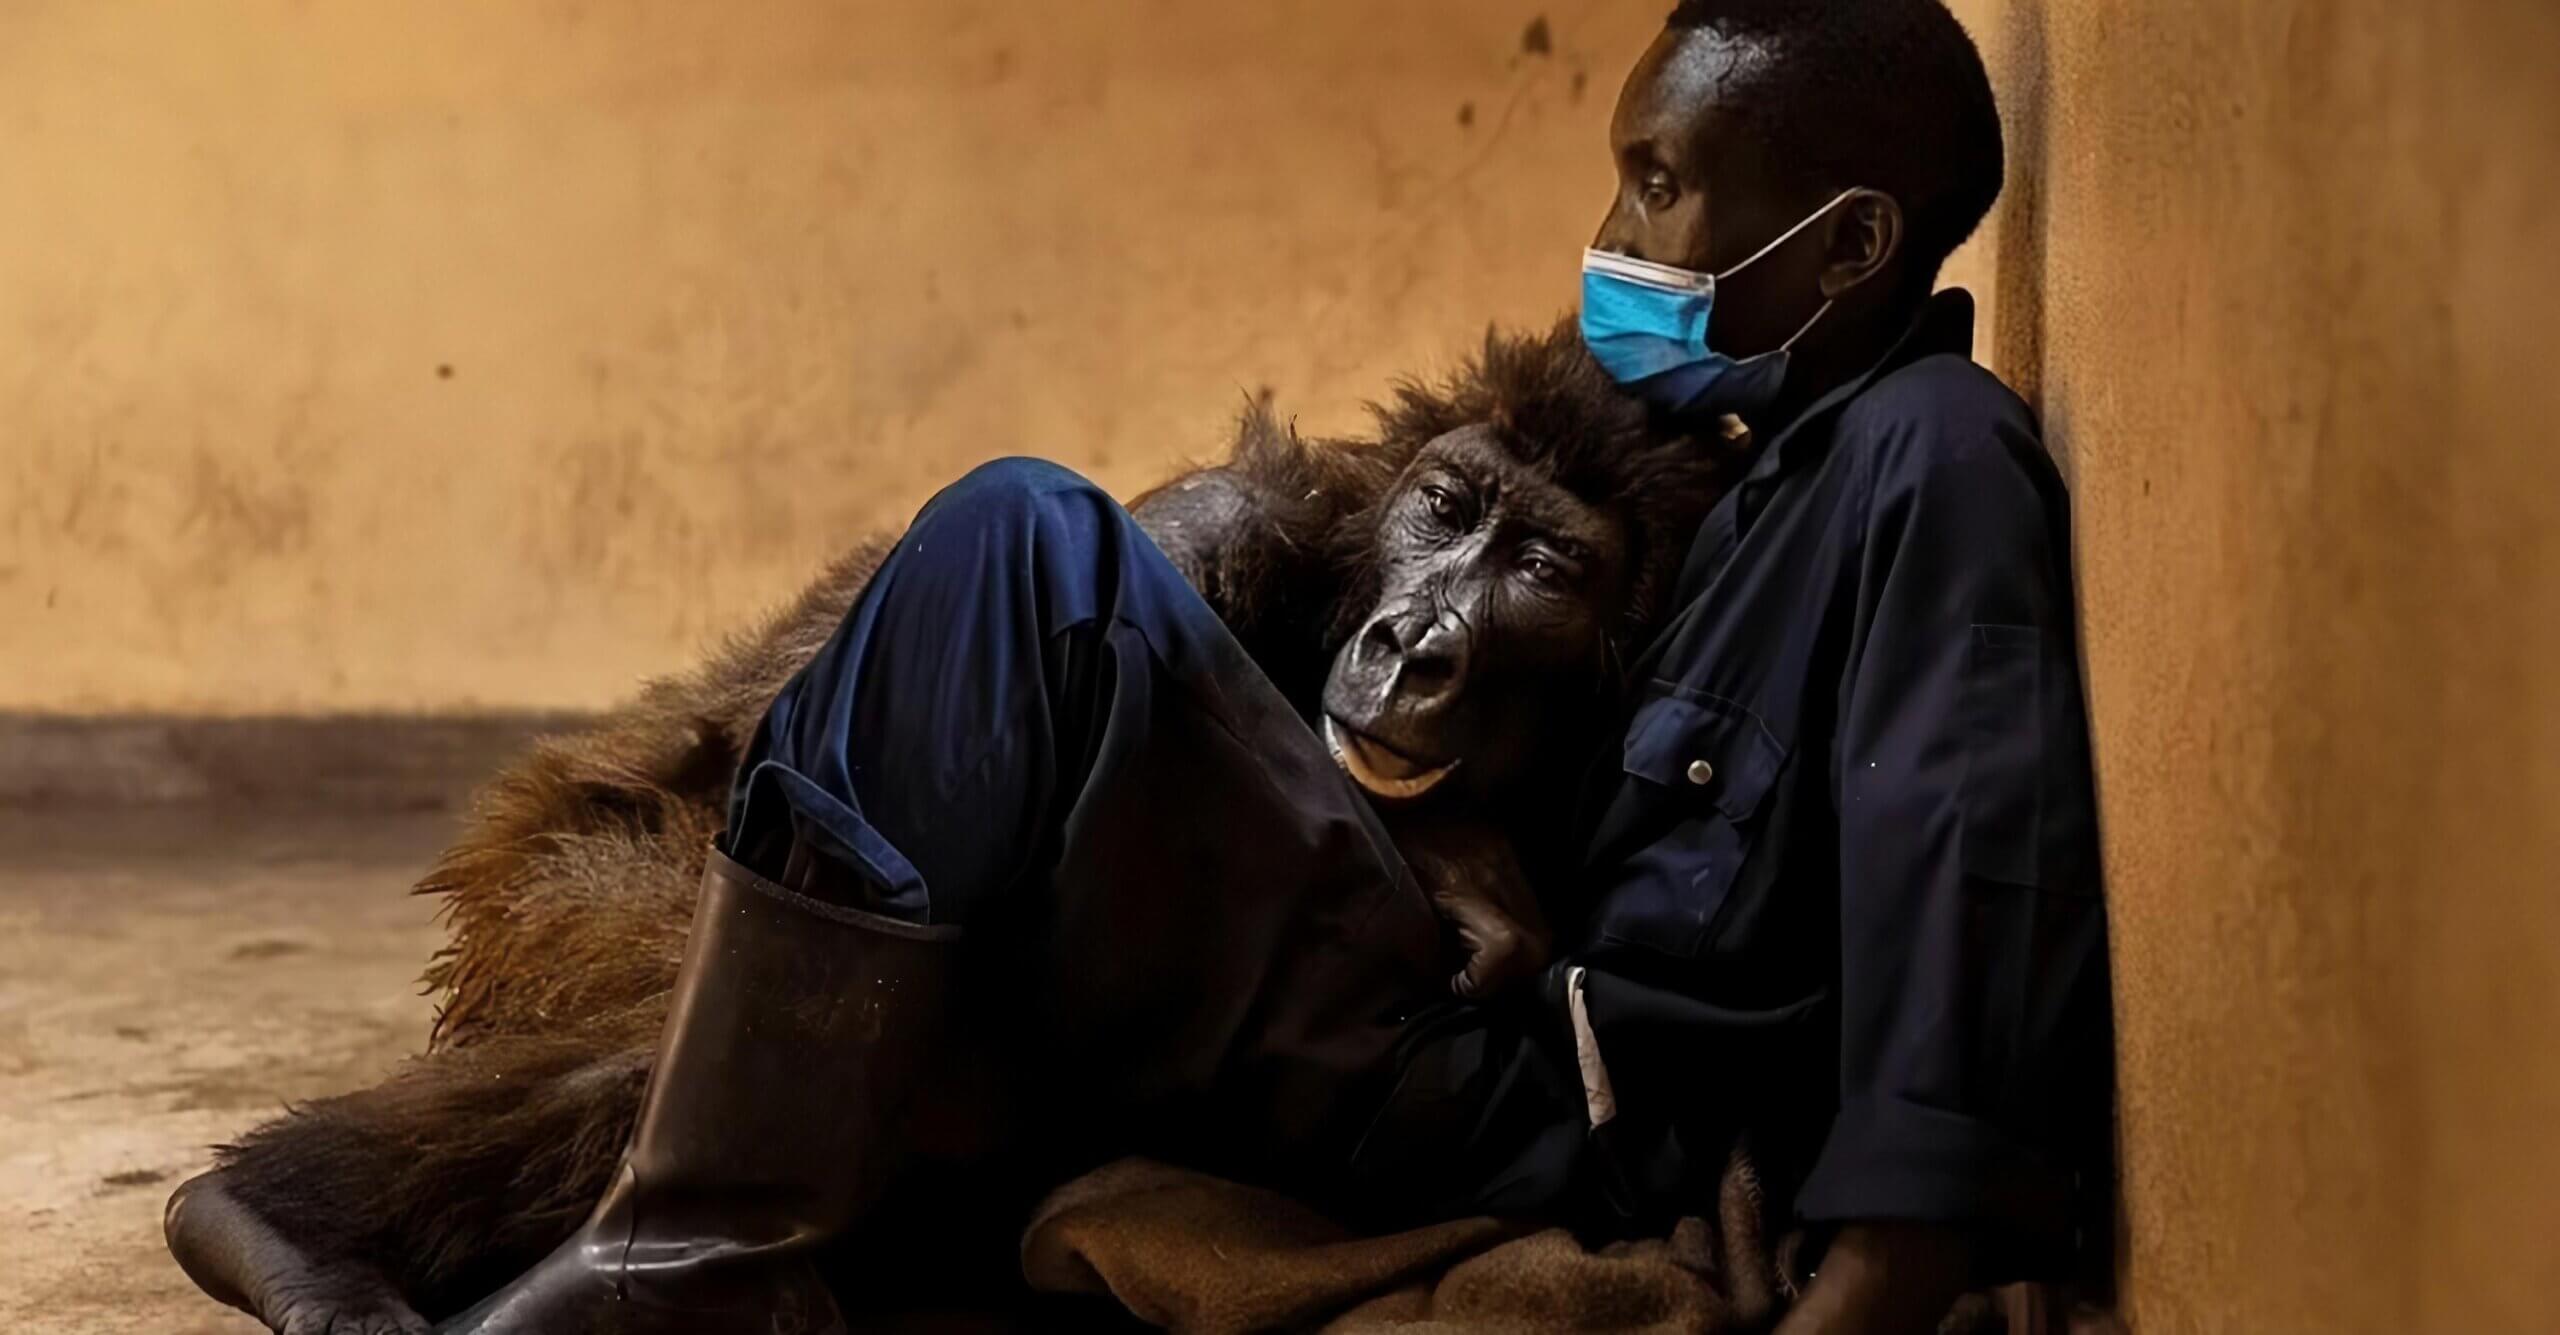 “Fue un privilegio cuidarla”: falleció gorila en brazos del cuidador que la rescató